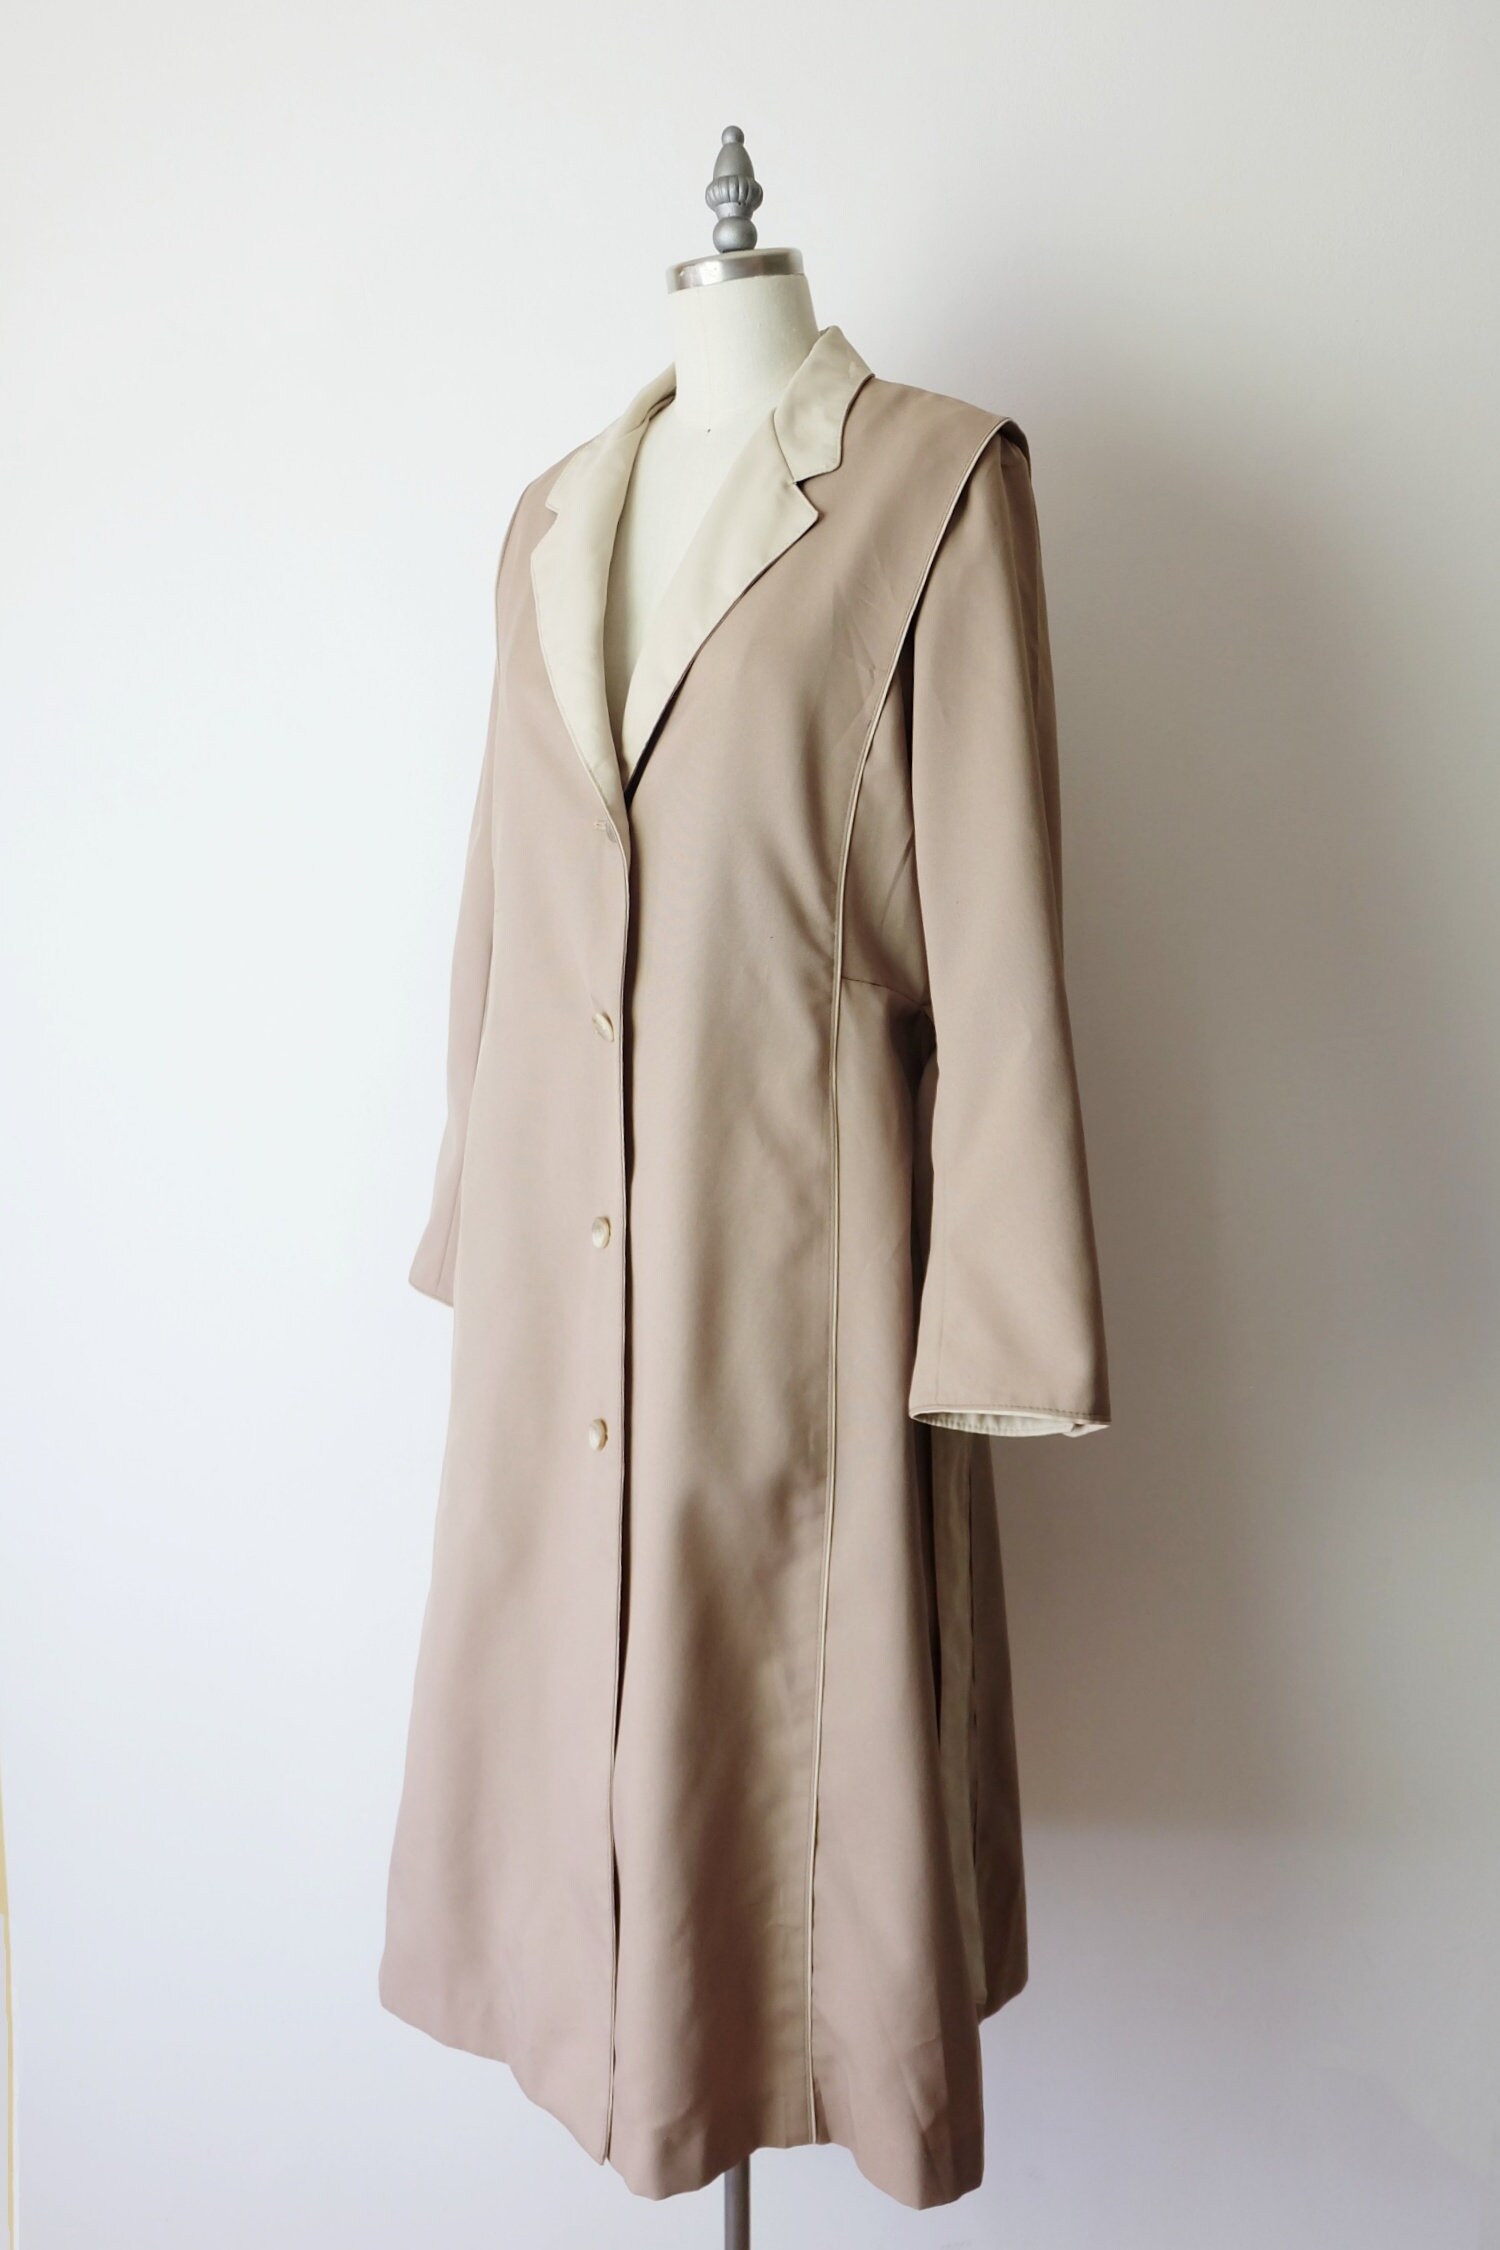 Vintage Sand Beige/Ivory Trench Coat/Rain Coat/Minimal Coat | Etsy